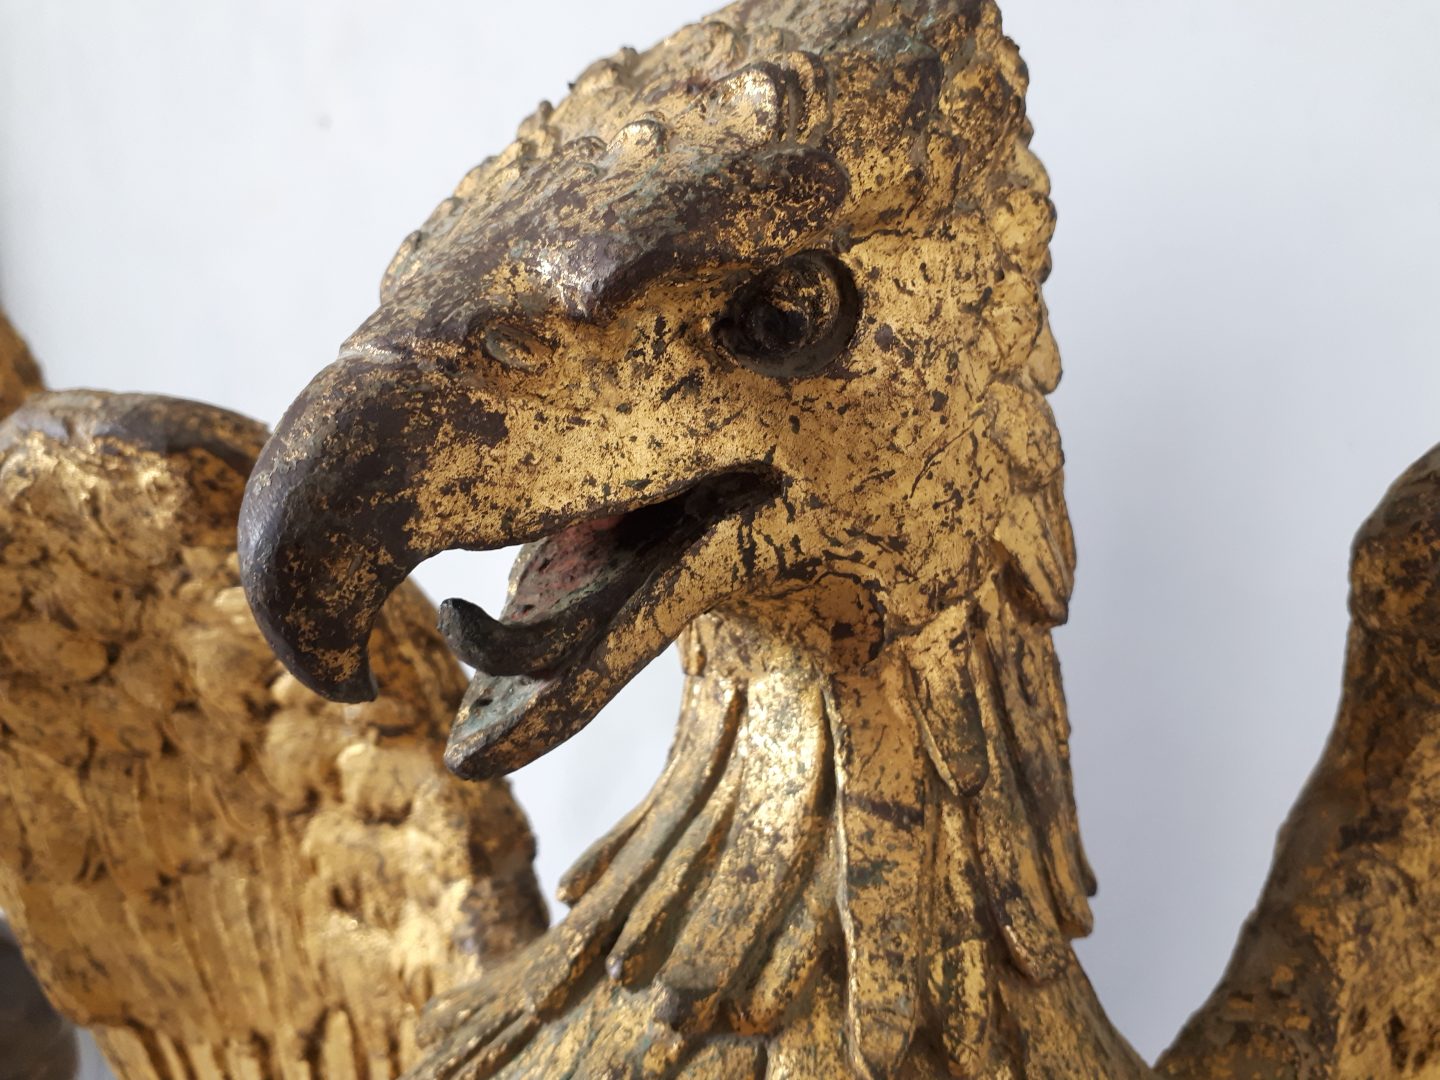 dettaglio della testa dell'aquila in bronzo dorato dopo la pulitura laser - details of the eagle's head after laser cleaning